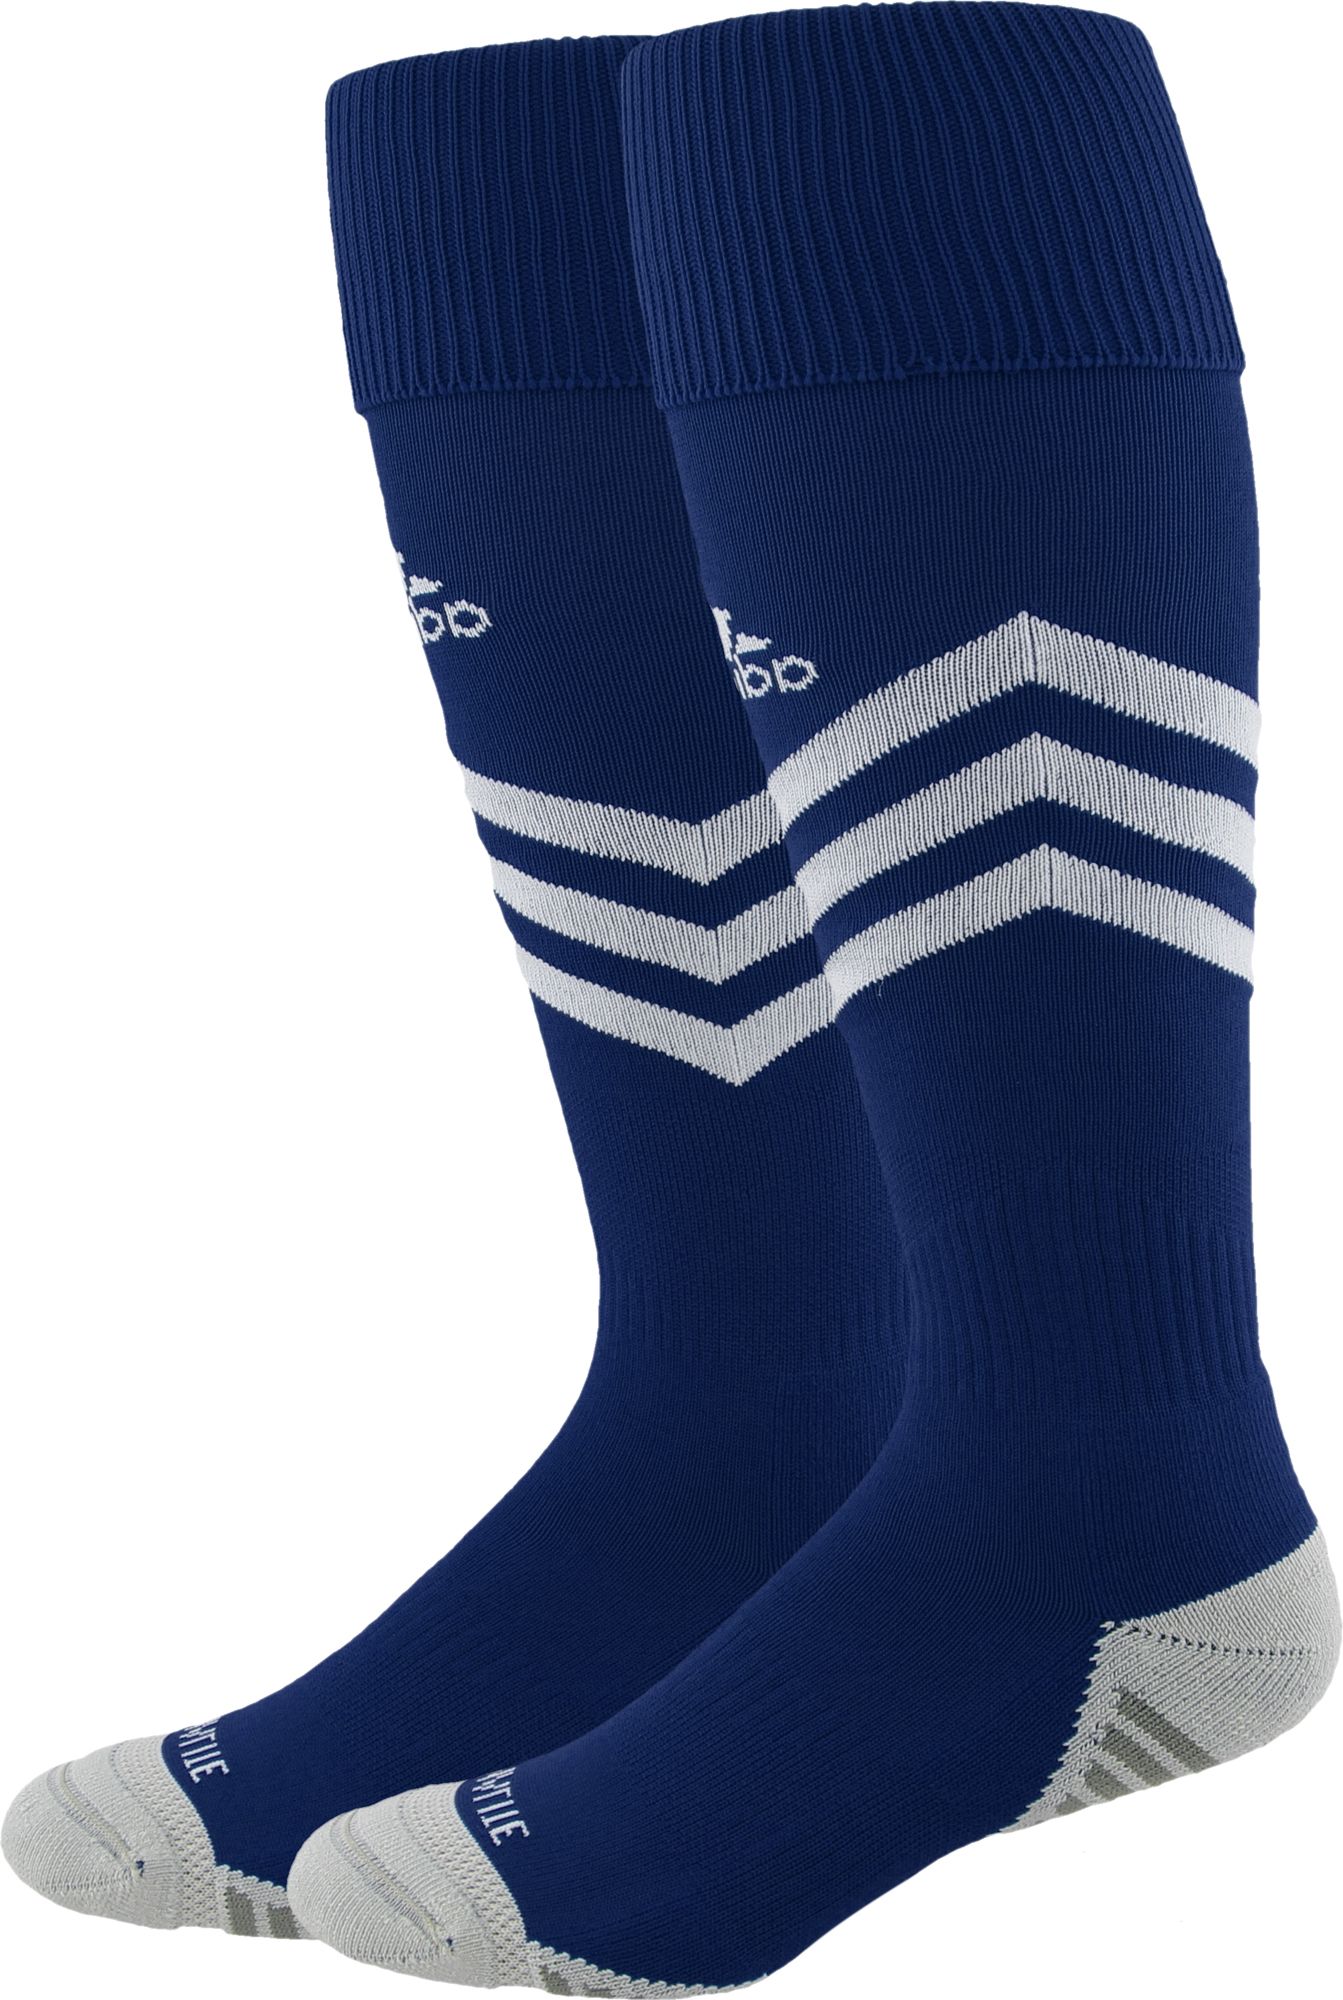 adidas navy soccer socks